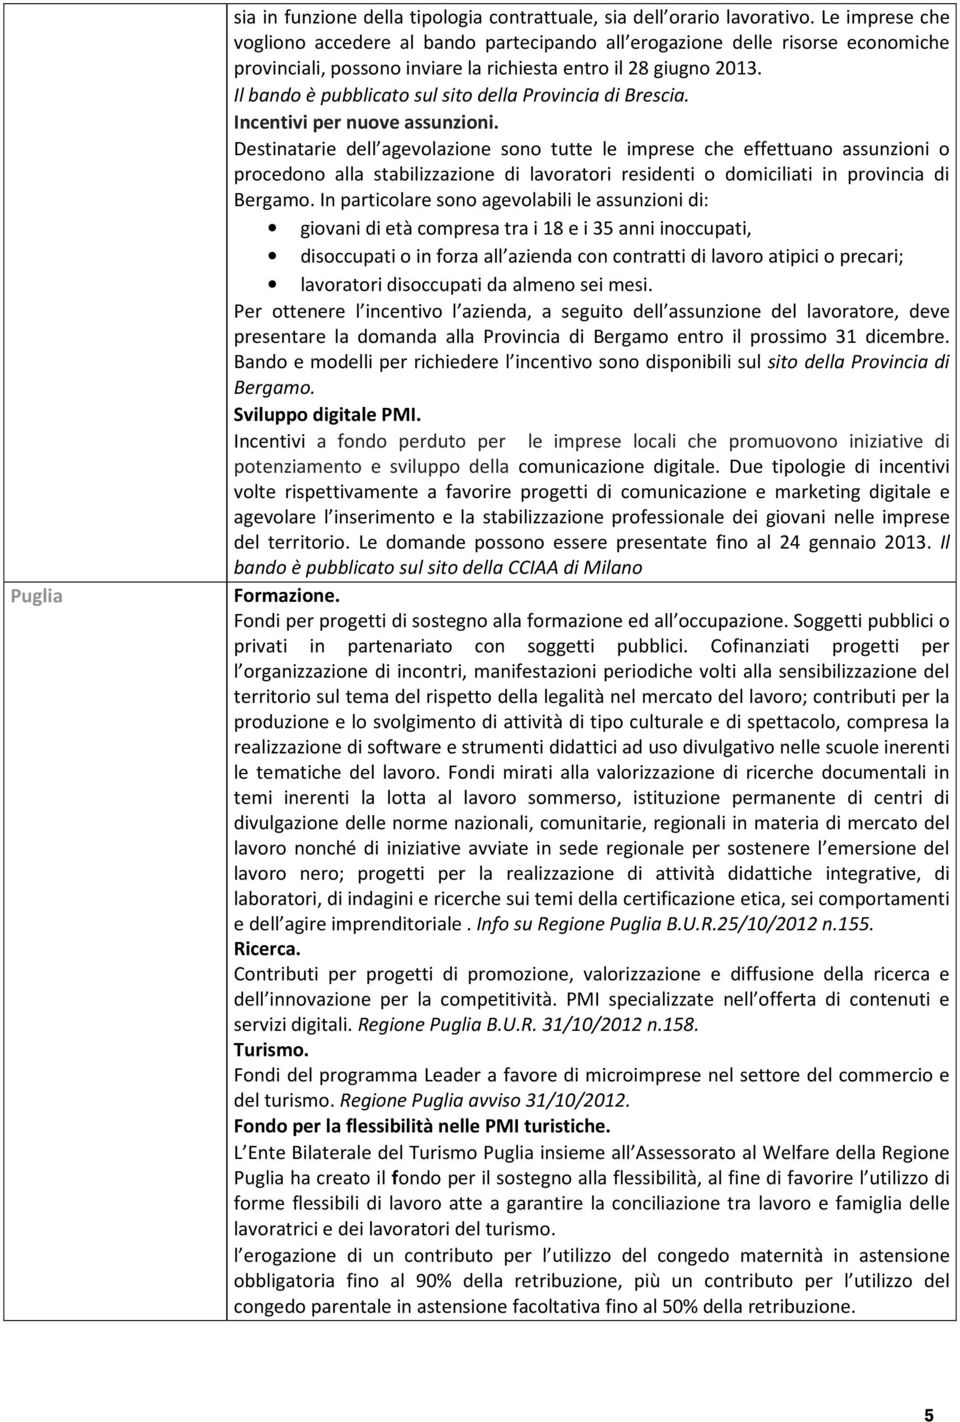 Il bando è pubblicato sul sito della Provincia di Brescia. Incentivi per nuove assunzioni.